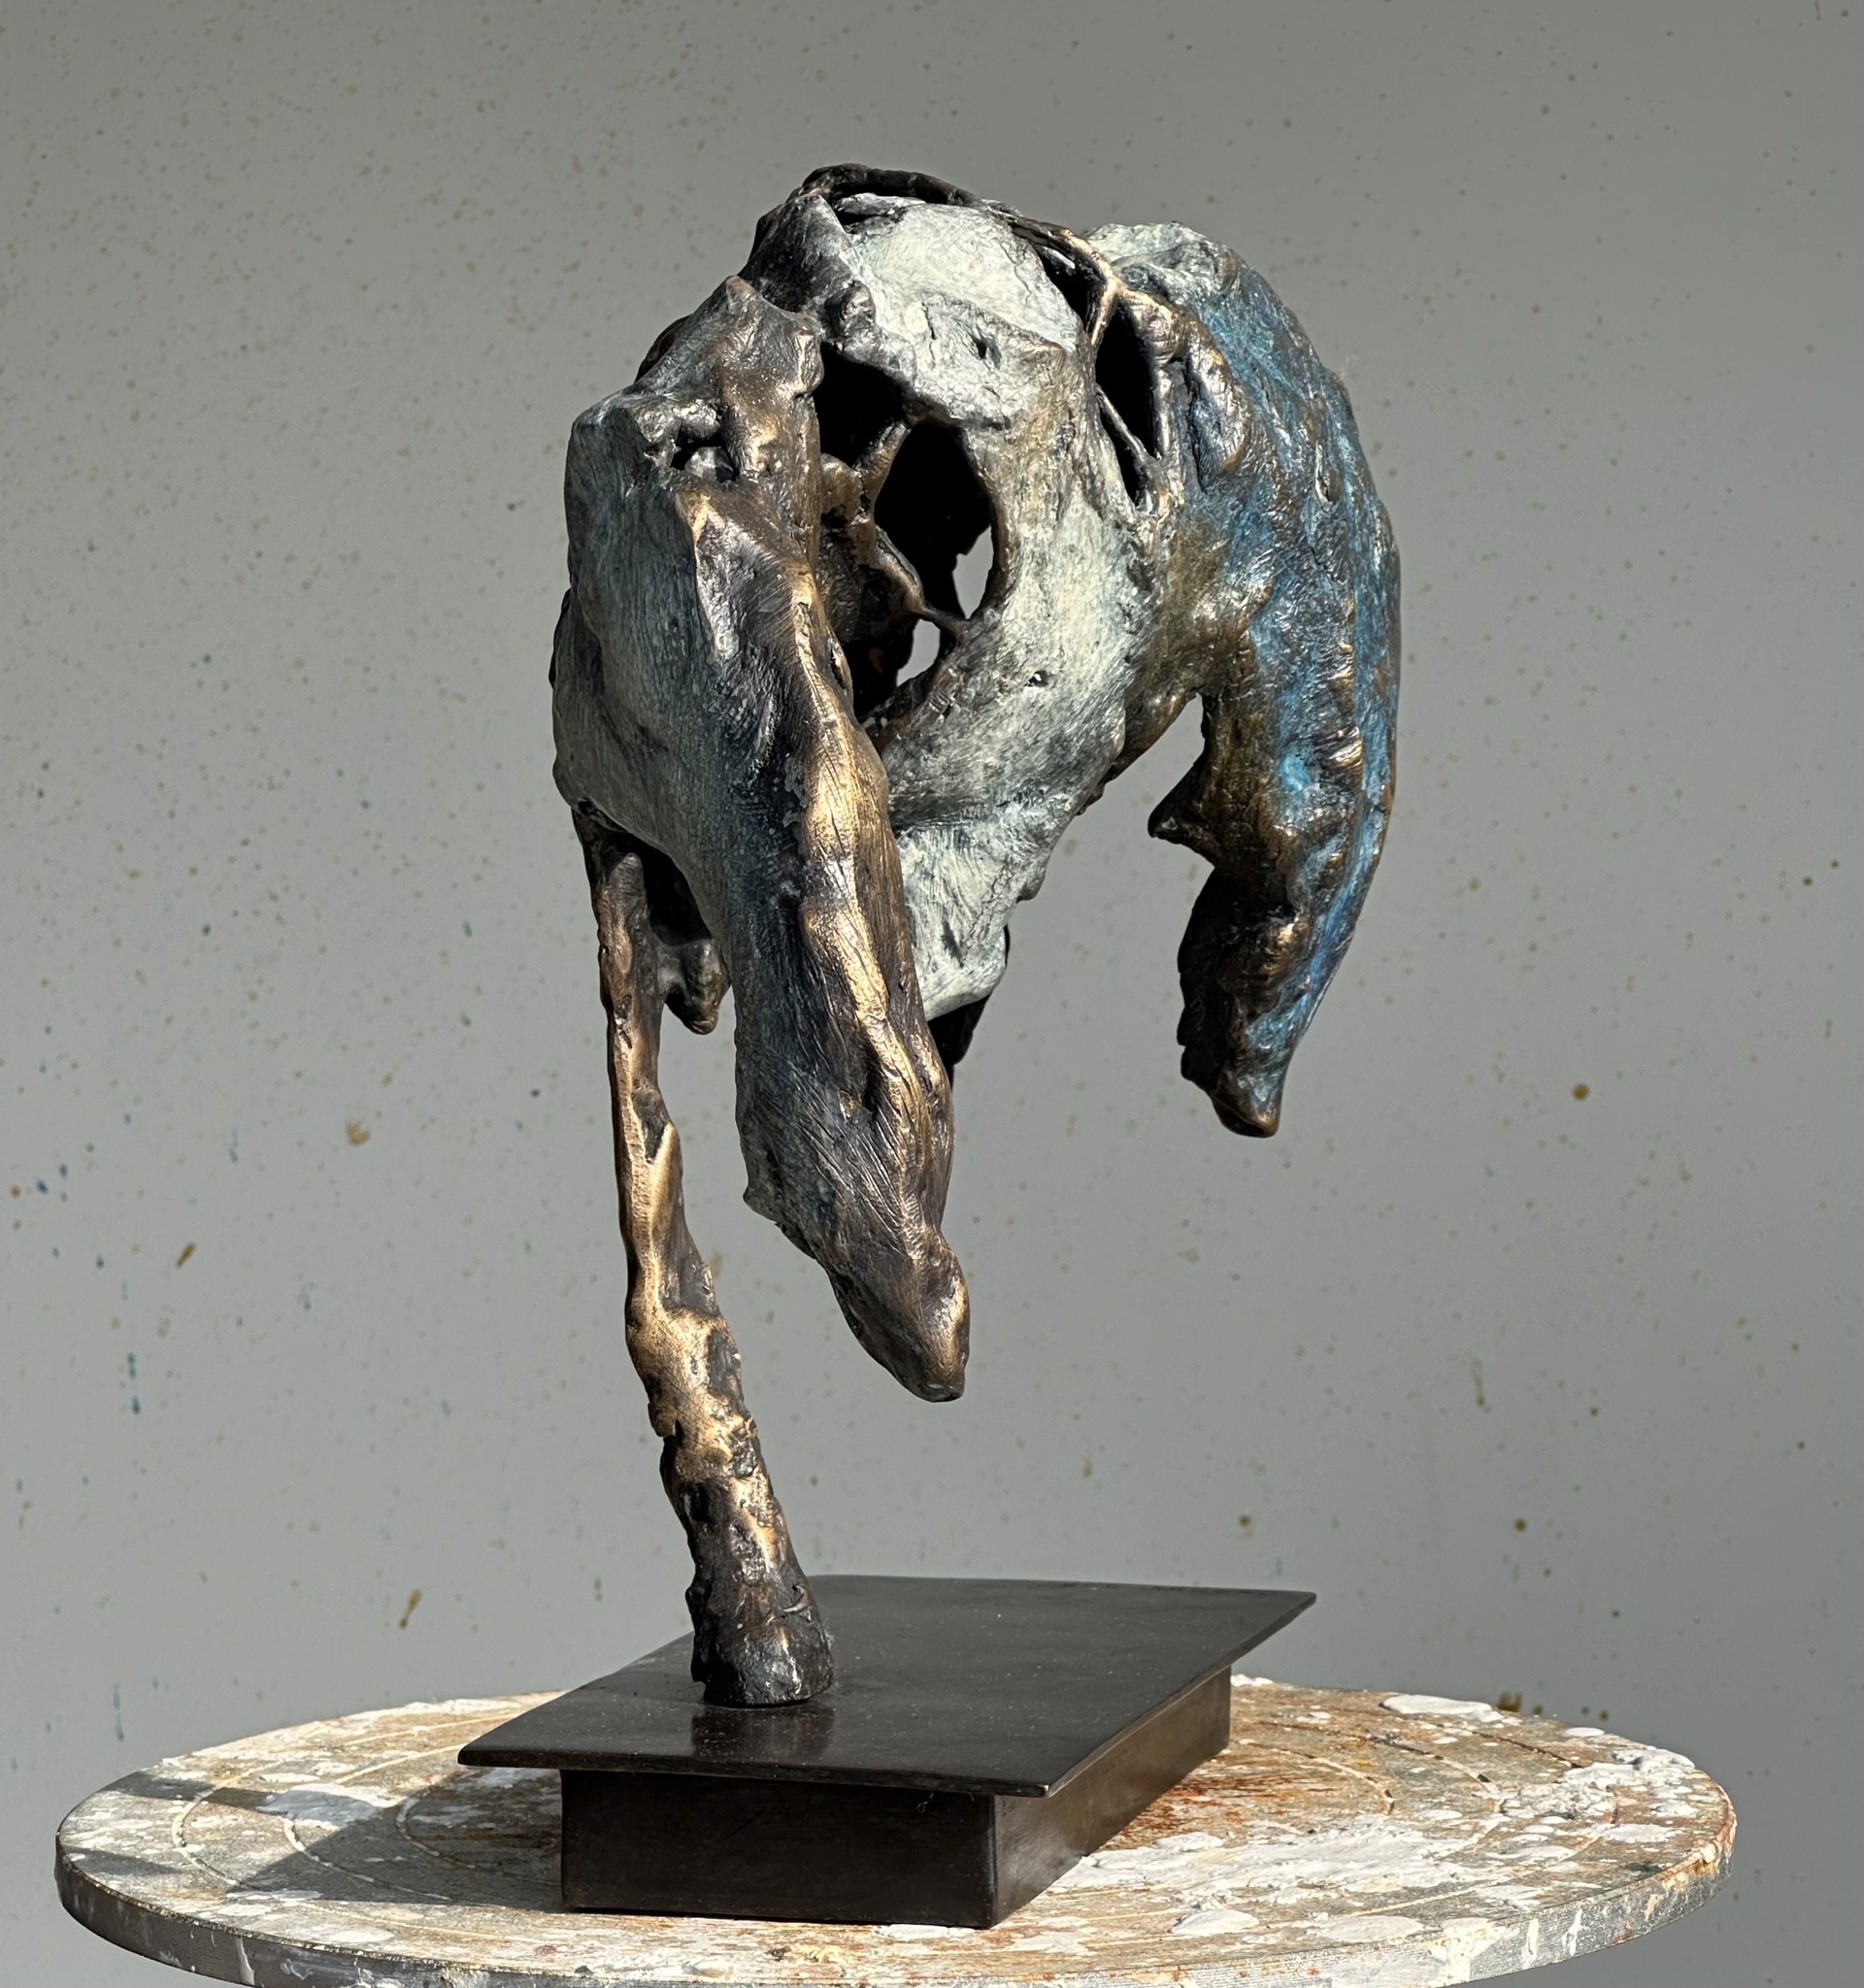 Horse Head Down by Copper Tritscheller